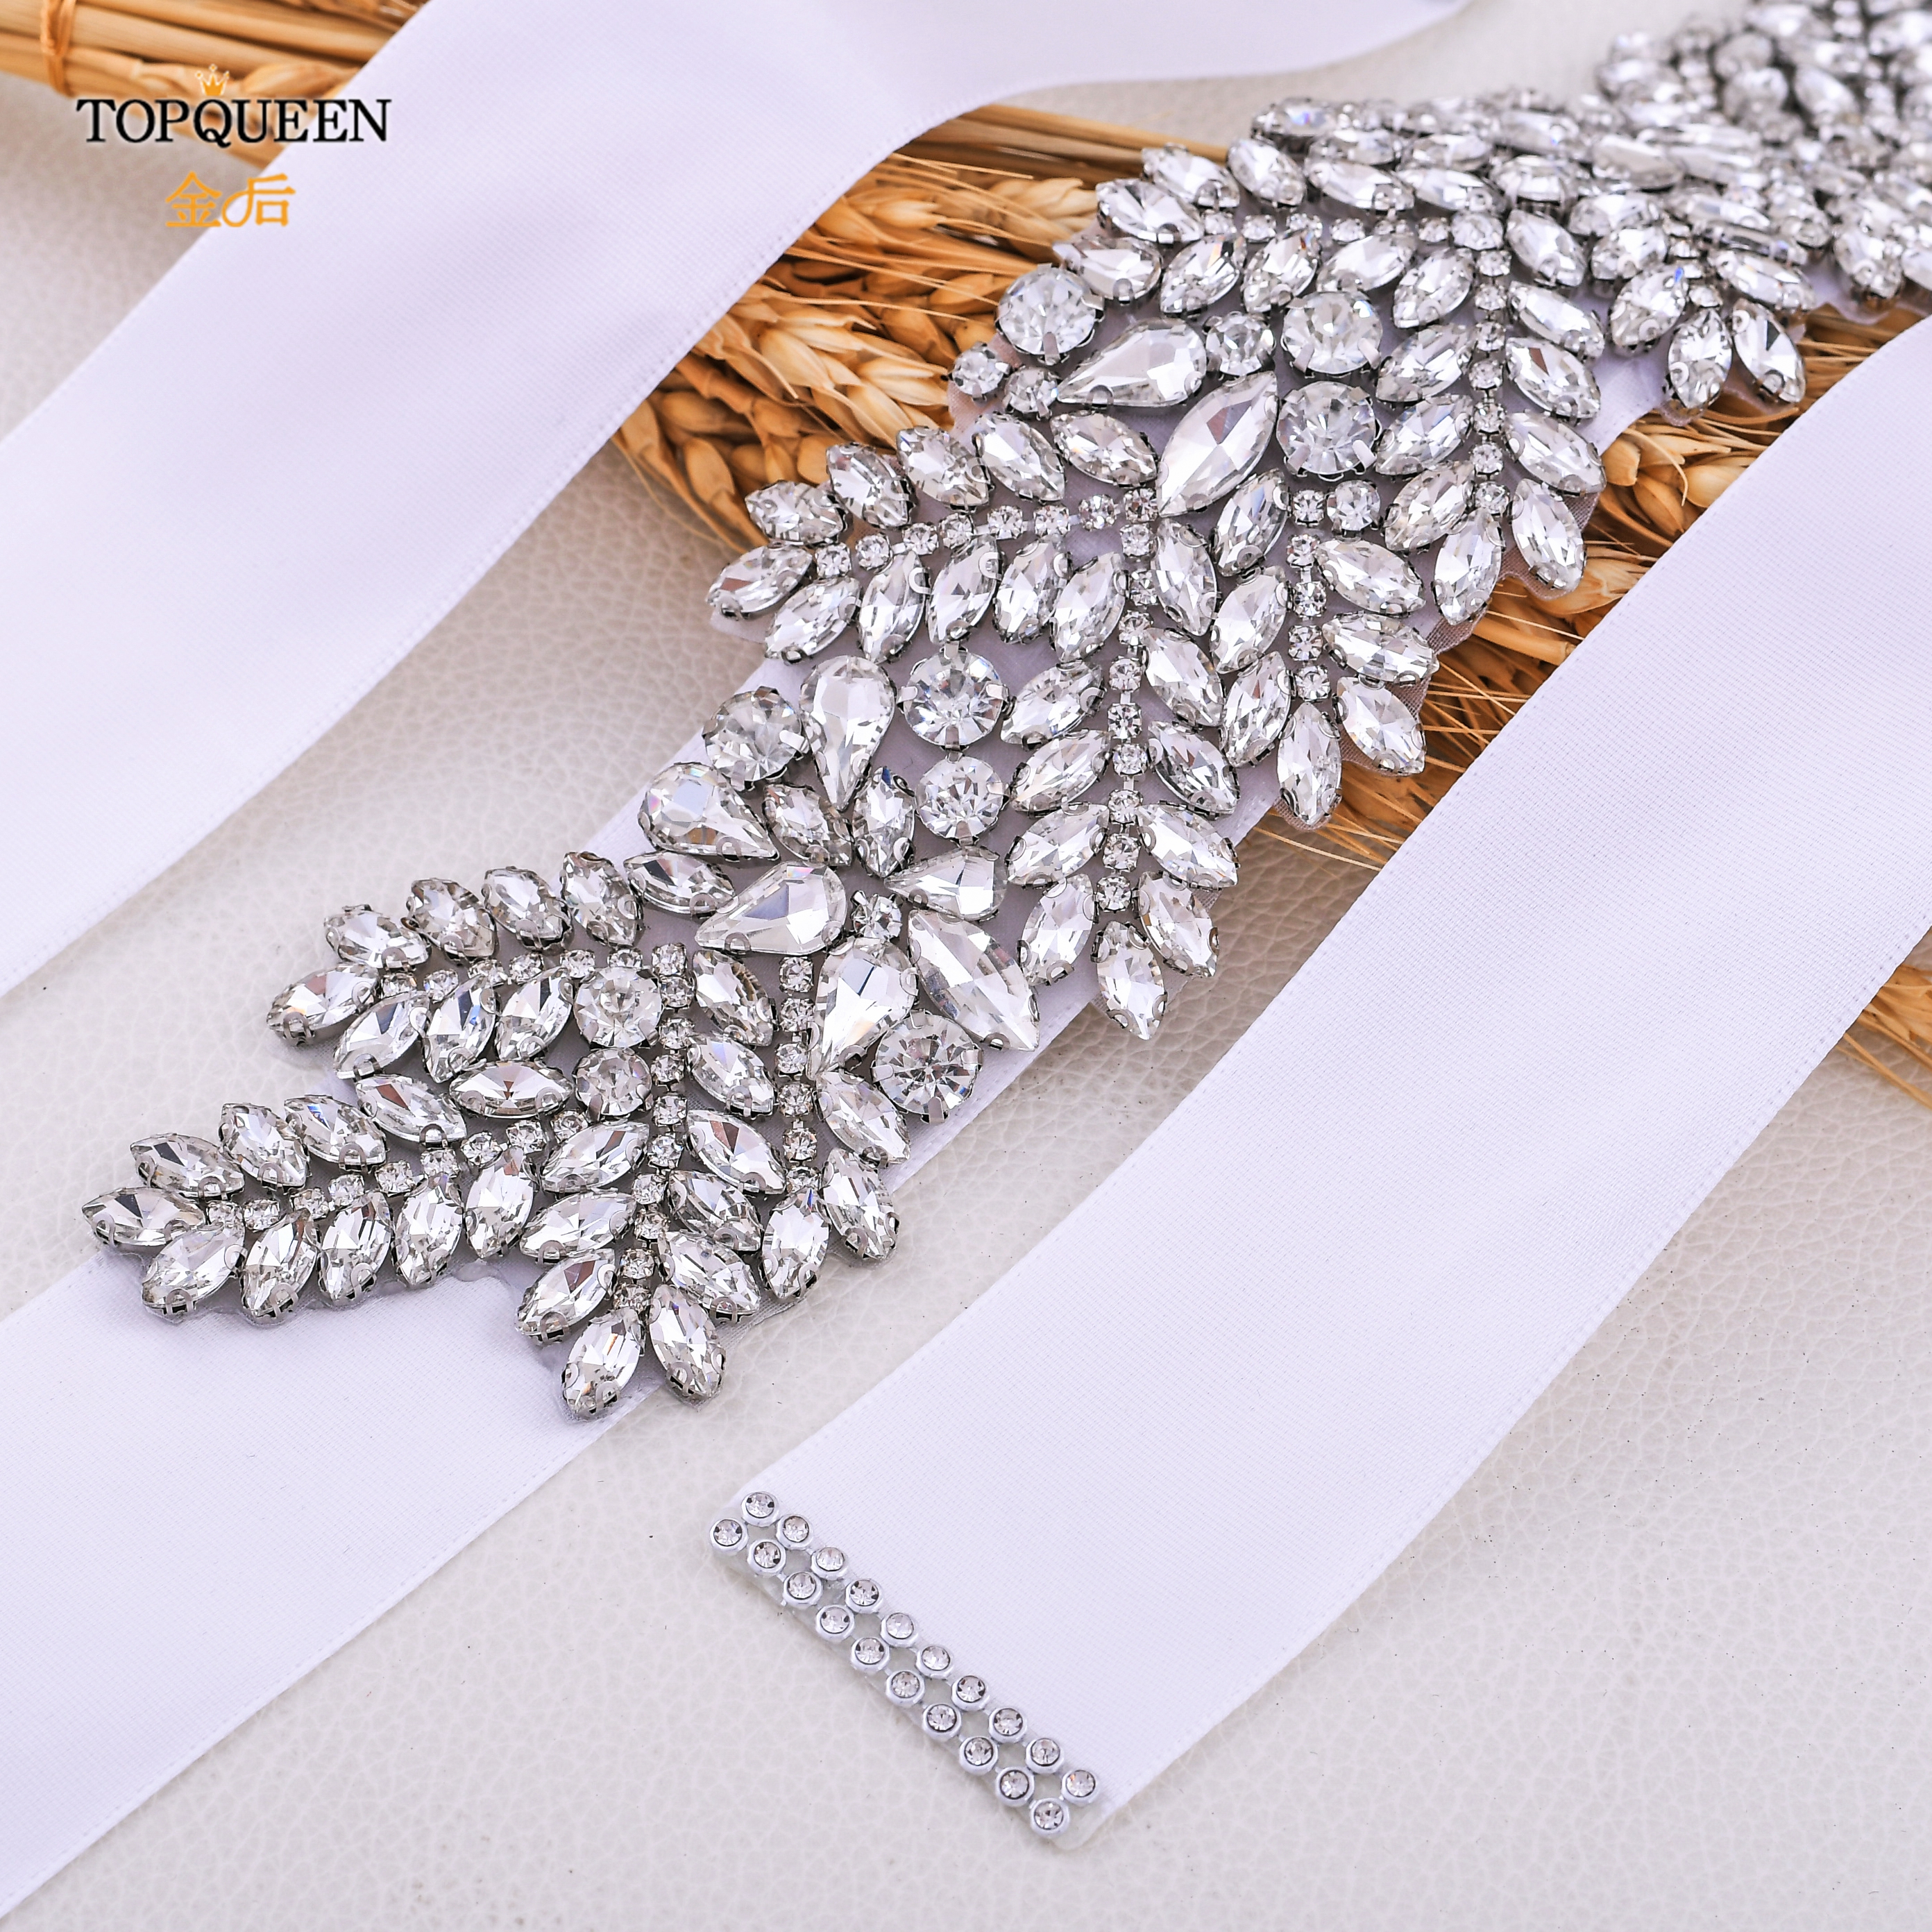 TOPQUEEN S420 rhinestone bridal belt wedding belt for bridal pearl belt for dresses silver sash belt pearl wedding dress belts